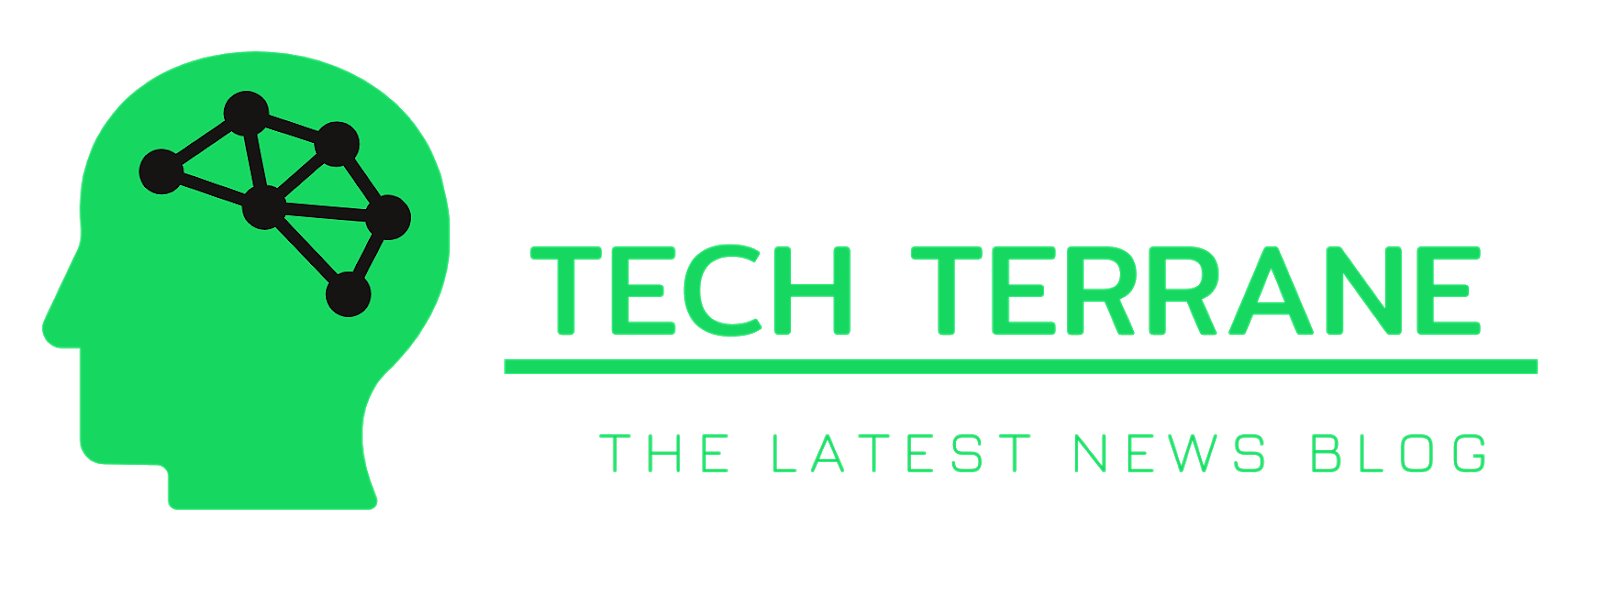 Tech Terrane the latest news website